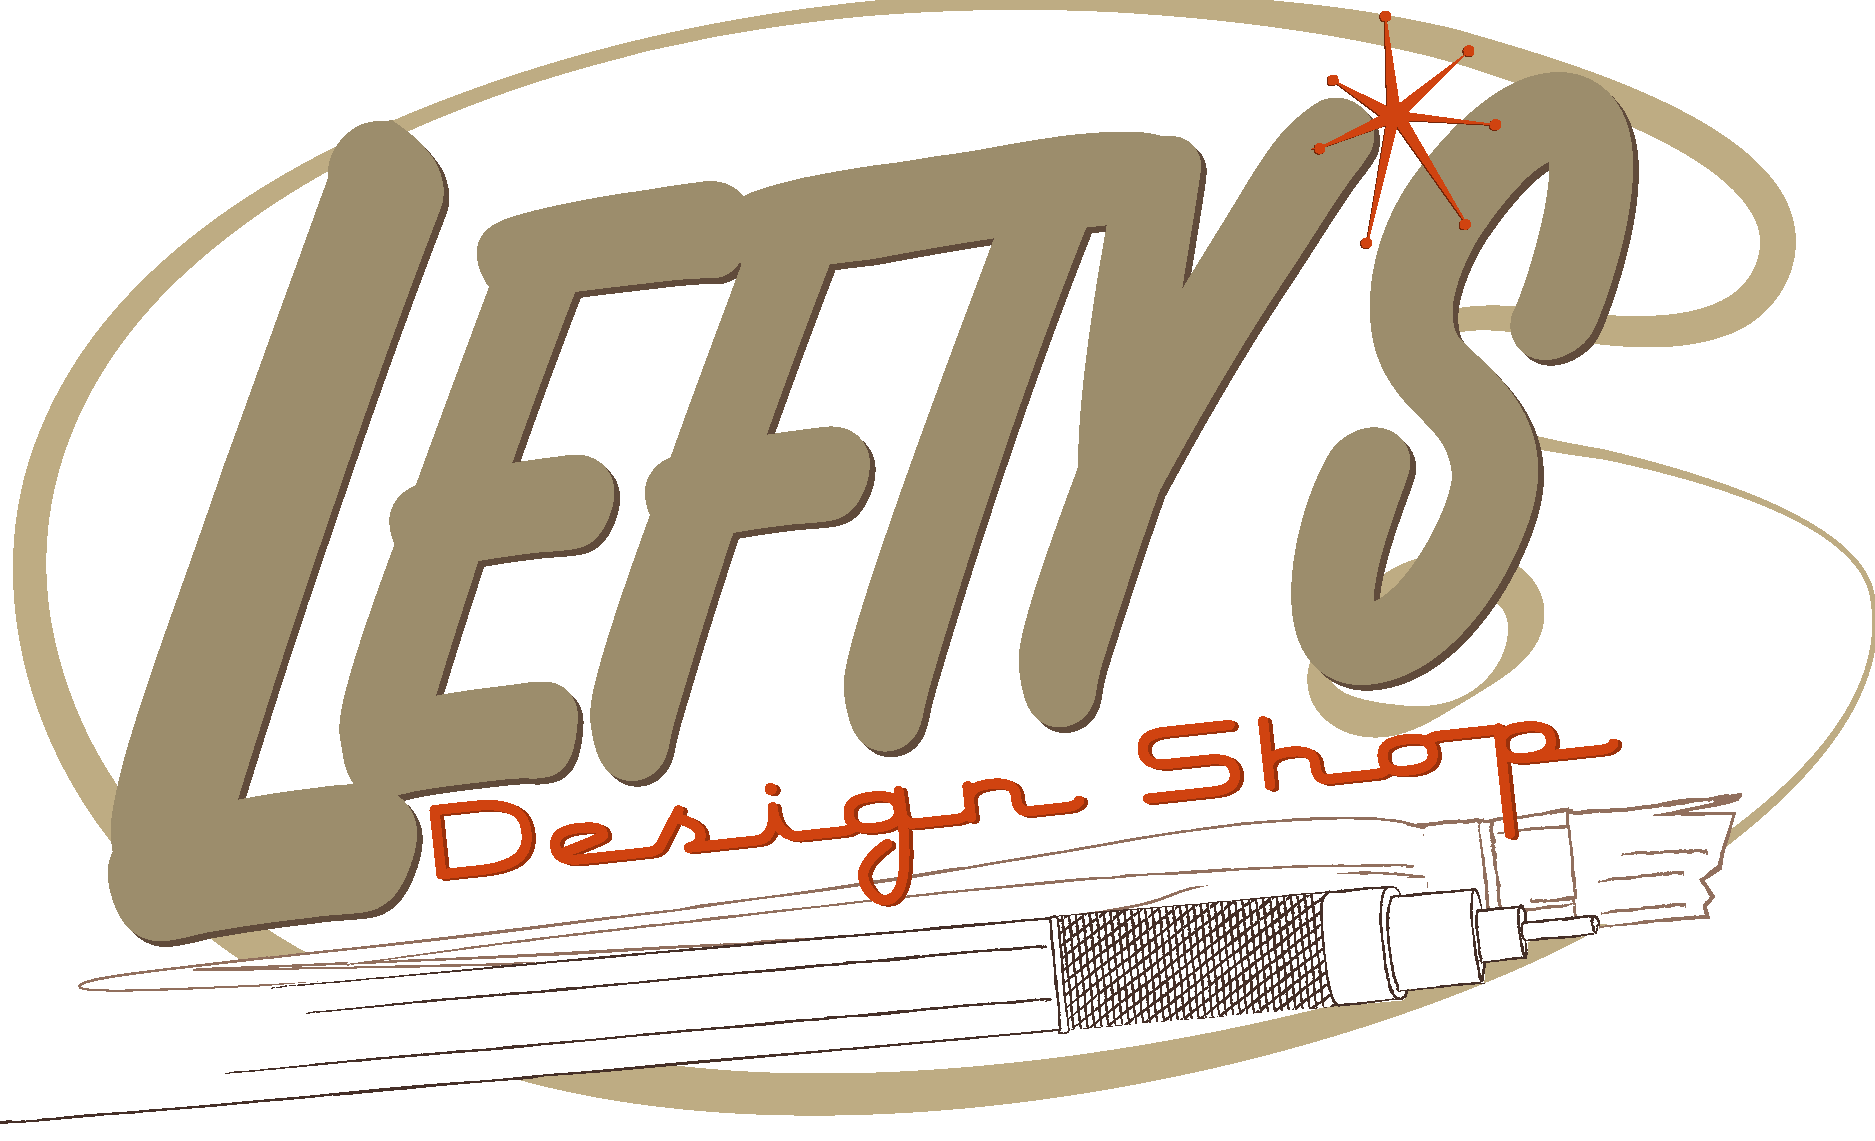 Lefty’s Design Shop Logo Vector